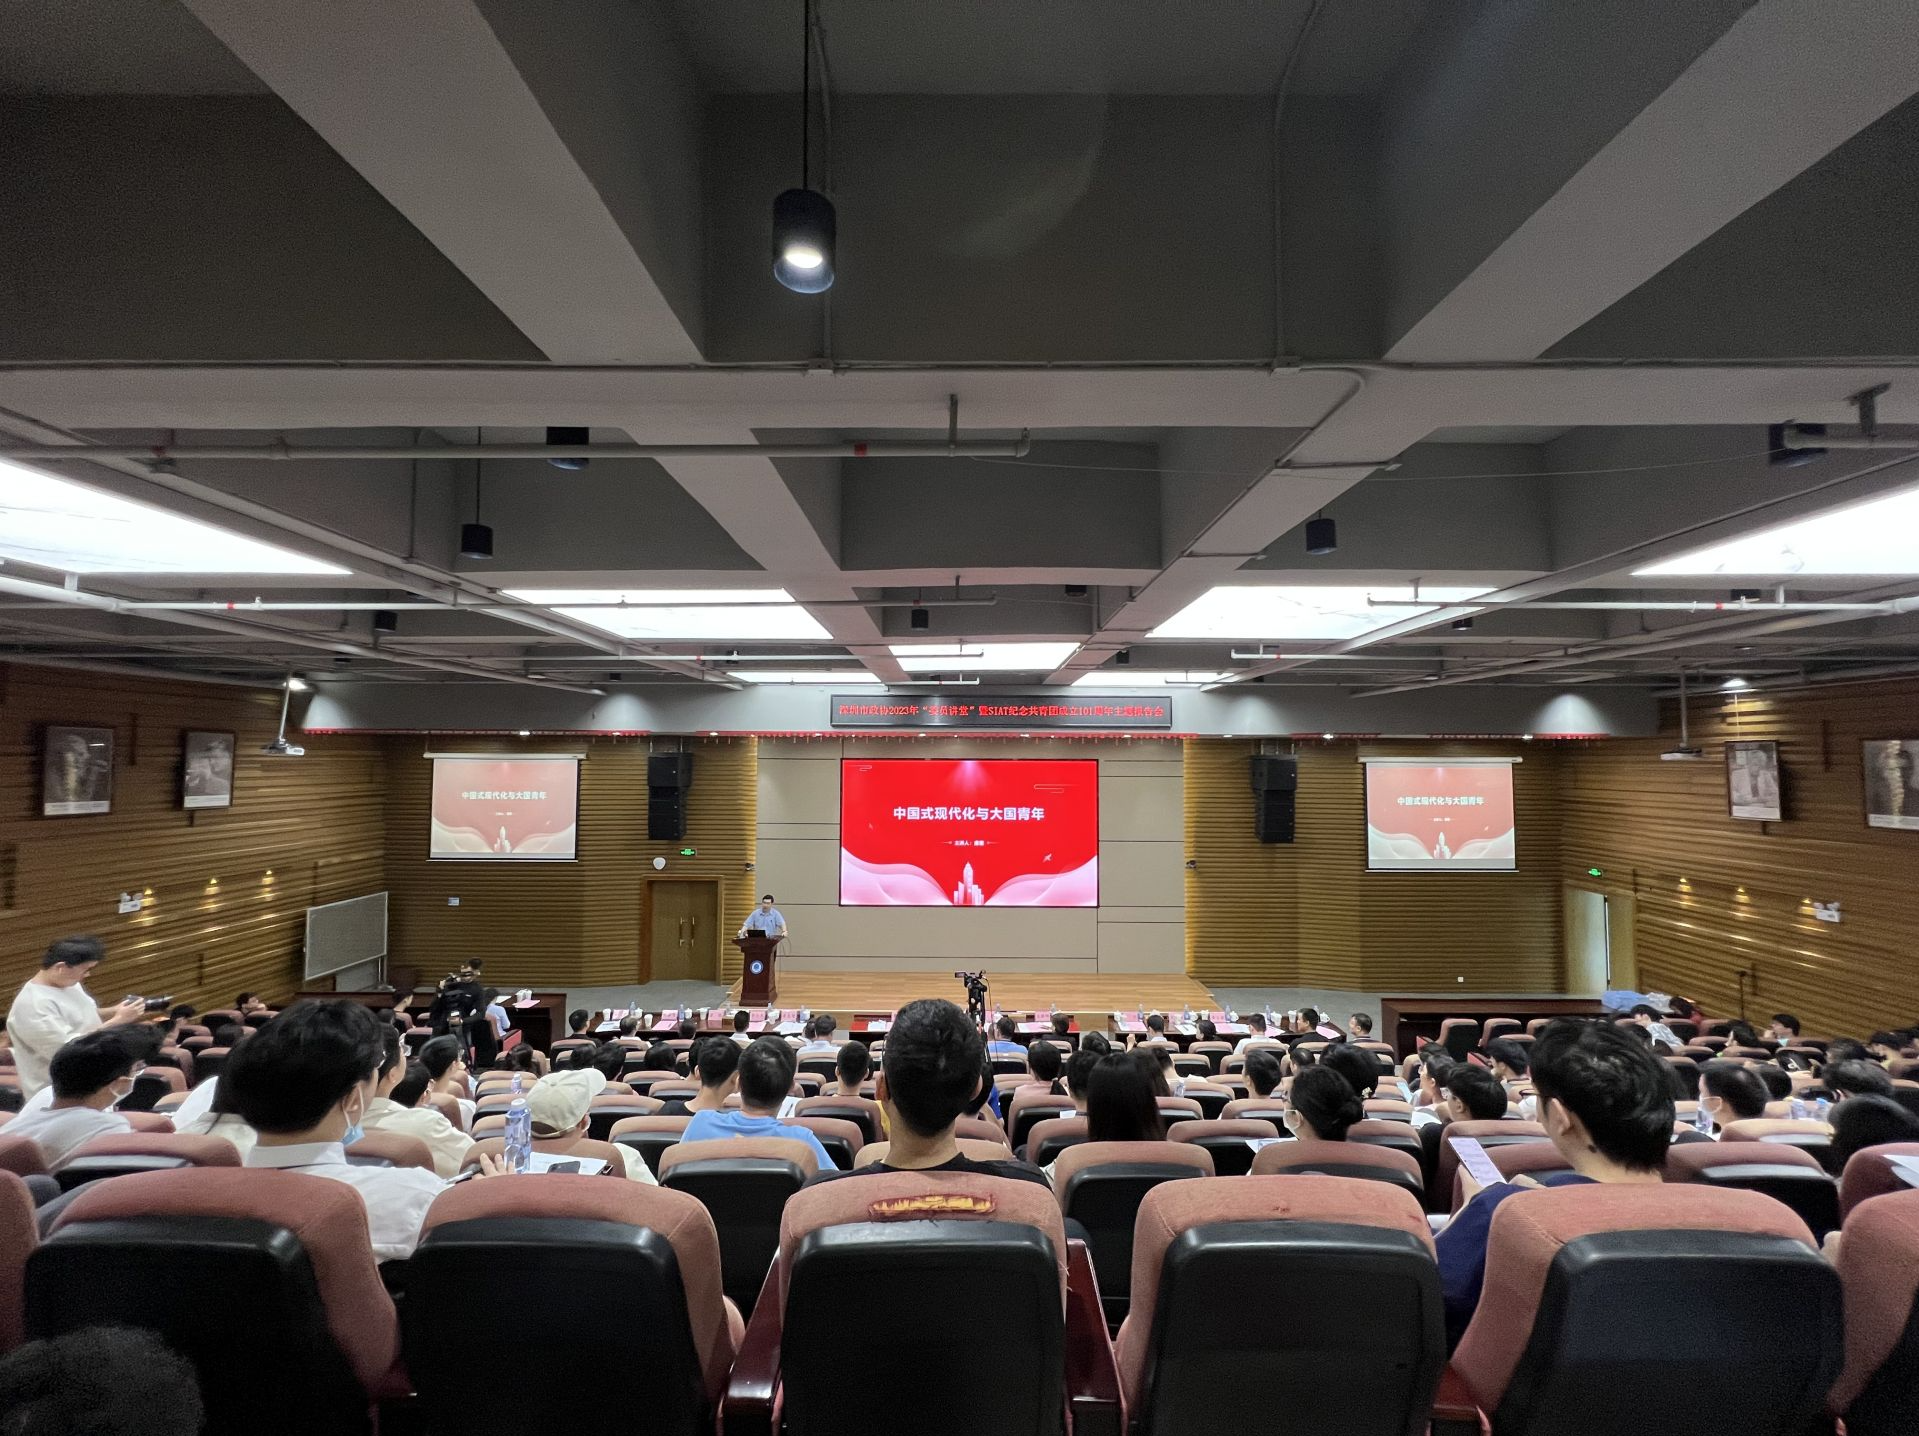 “青年是中国式现代化新征程重要建设者参与者” 深圳市政协2023年首场“委员讲堂”开讲